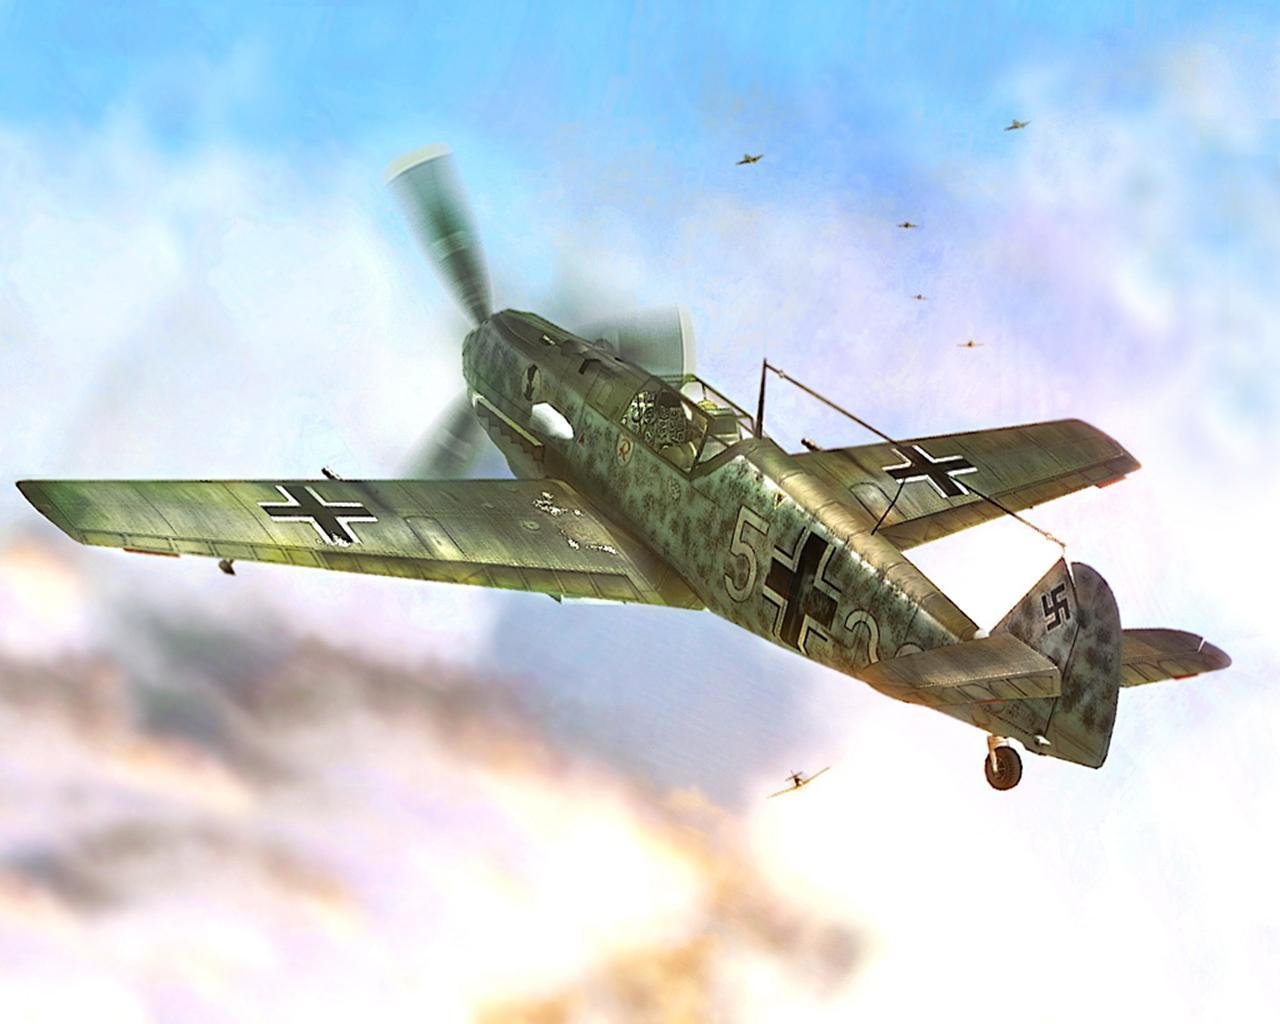 Messerschmitt Bf 109 Wallpapers Hd For Desktop Backgrounds Images, Photos, Reviews